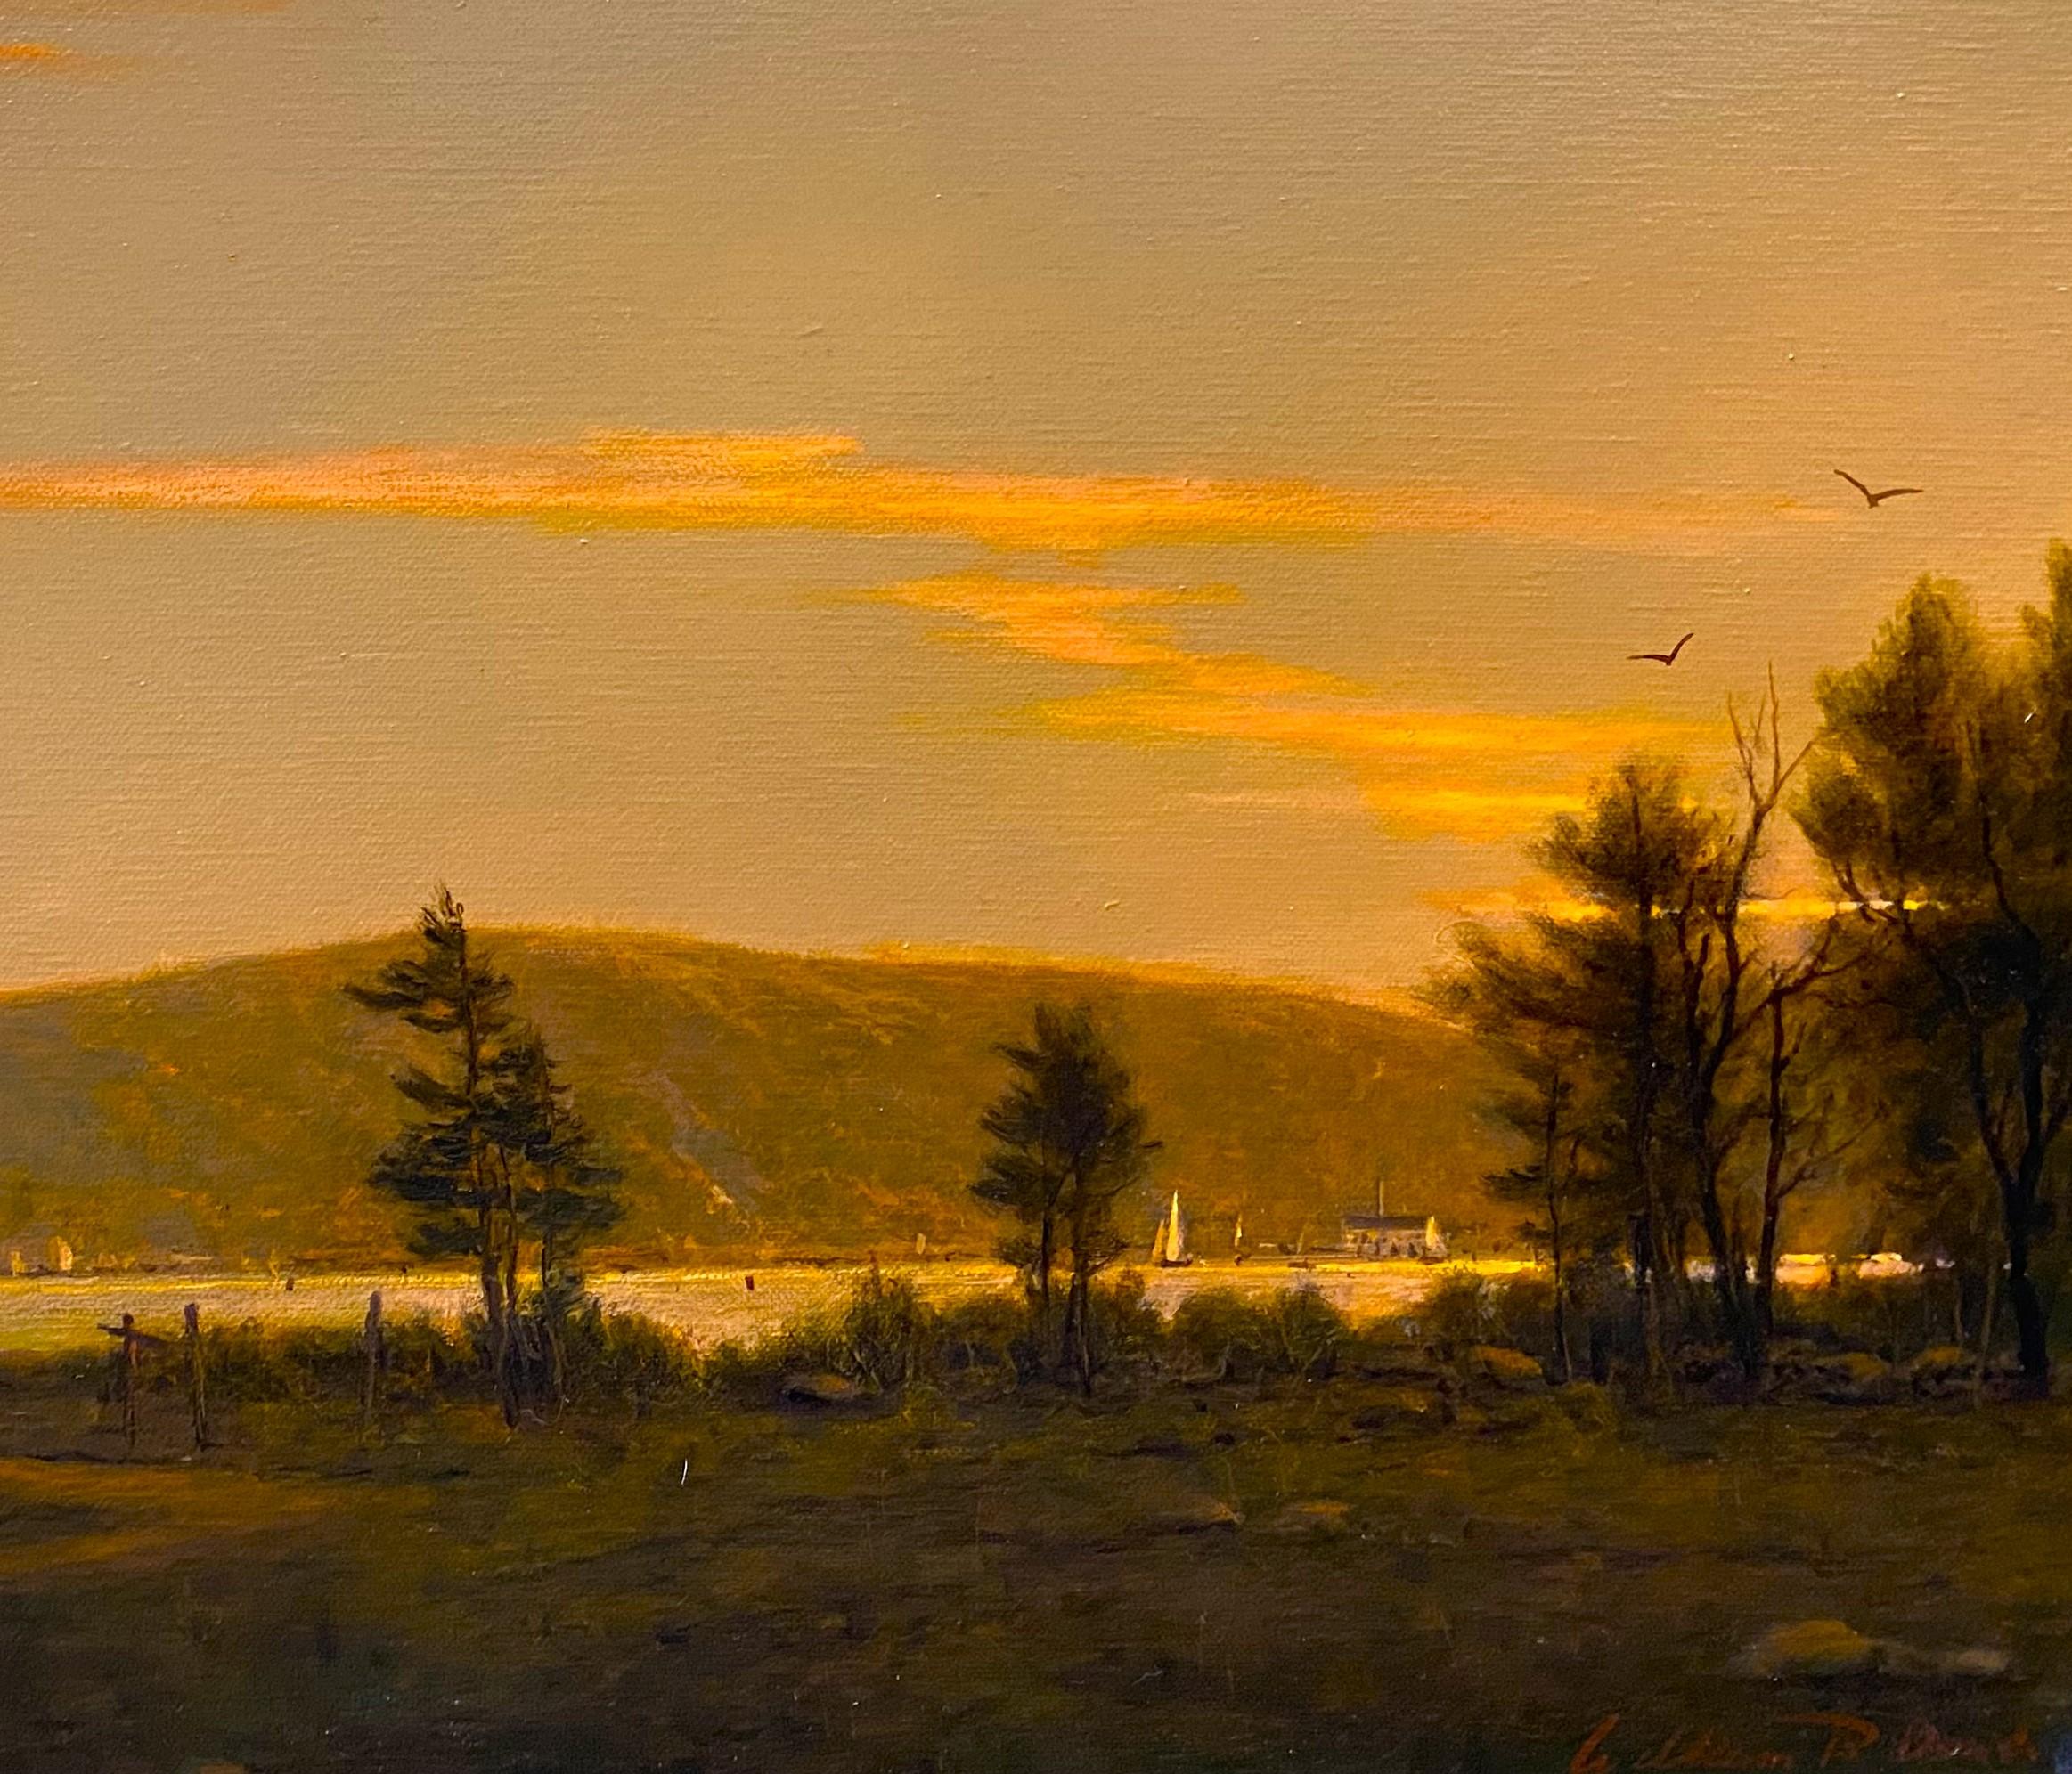 Eine schöne, leuchtende Hafenszene aus Maine des zeitgenössischen amerikanischen Künstlers William R. Davis (1952-). Davis wurde in Somerville, Massachusetts, geboren und wuchs in Hyannis Port auf, wo er Segelunterricht nahm und die Meereslandschaft